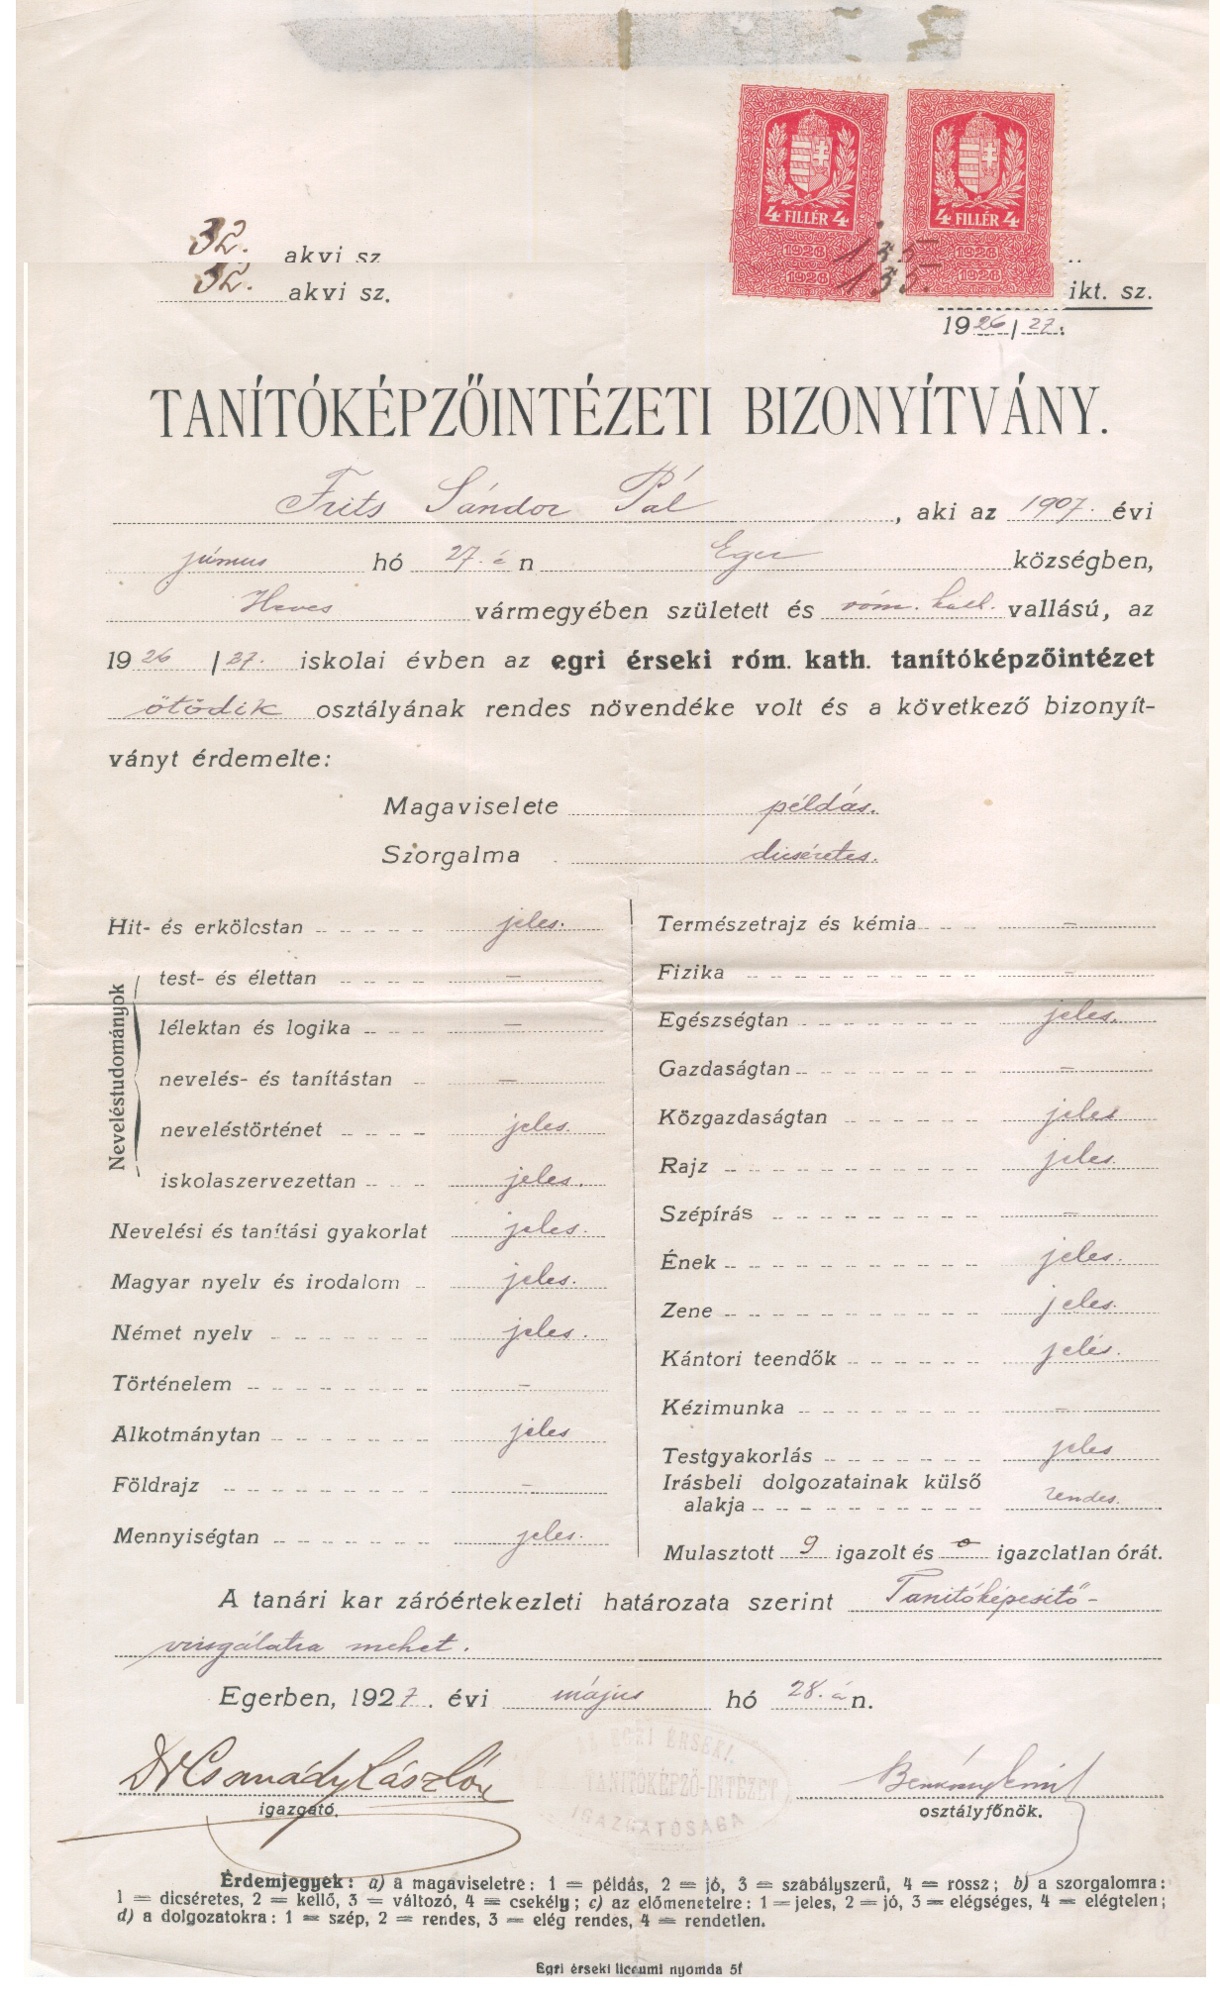 Tanítóképzô intézeti bizonyítvány (Gömöri Múzeum, Putnok CC BY-NC-SA)